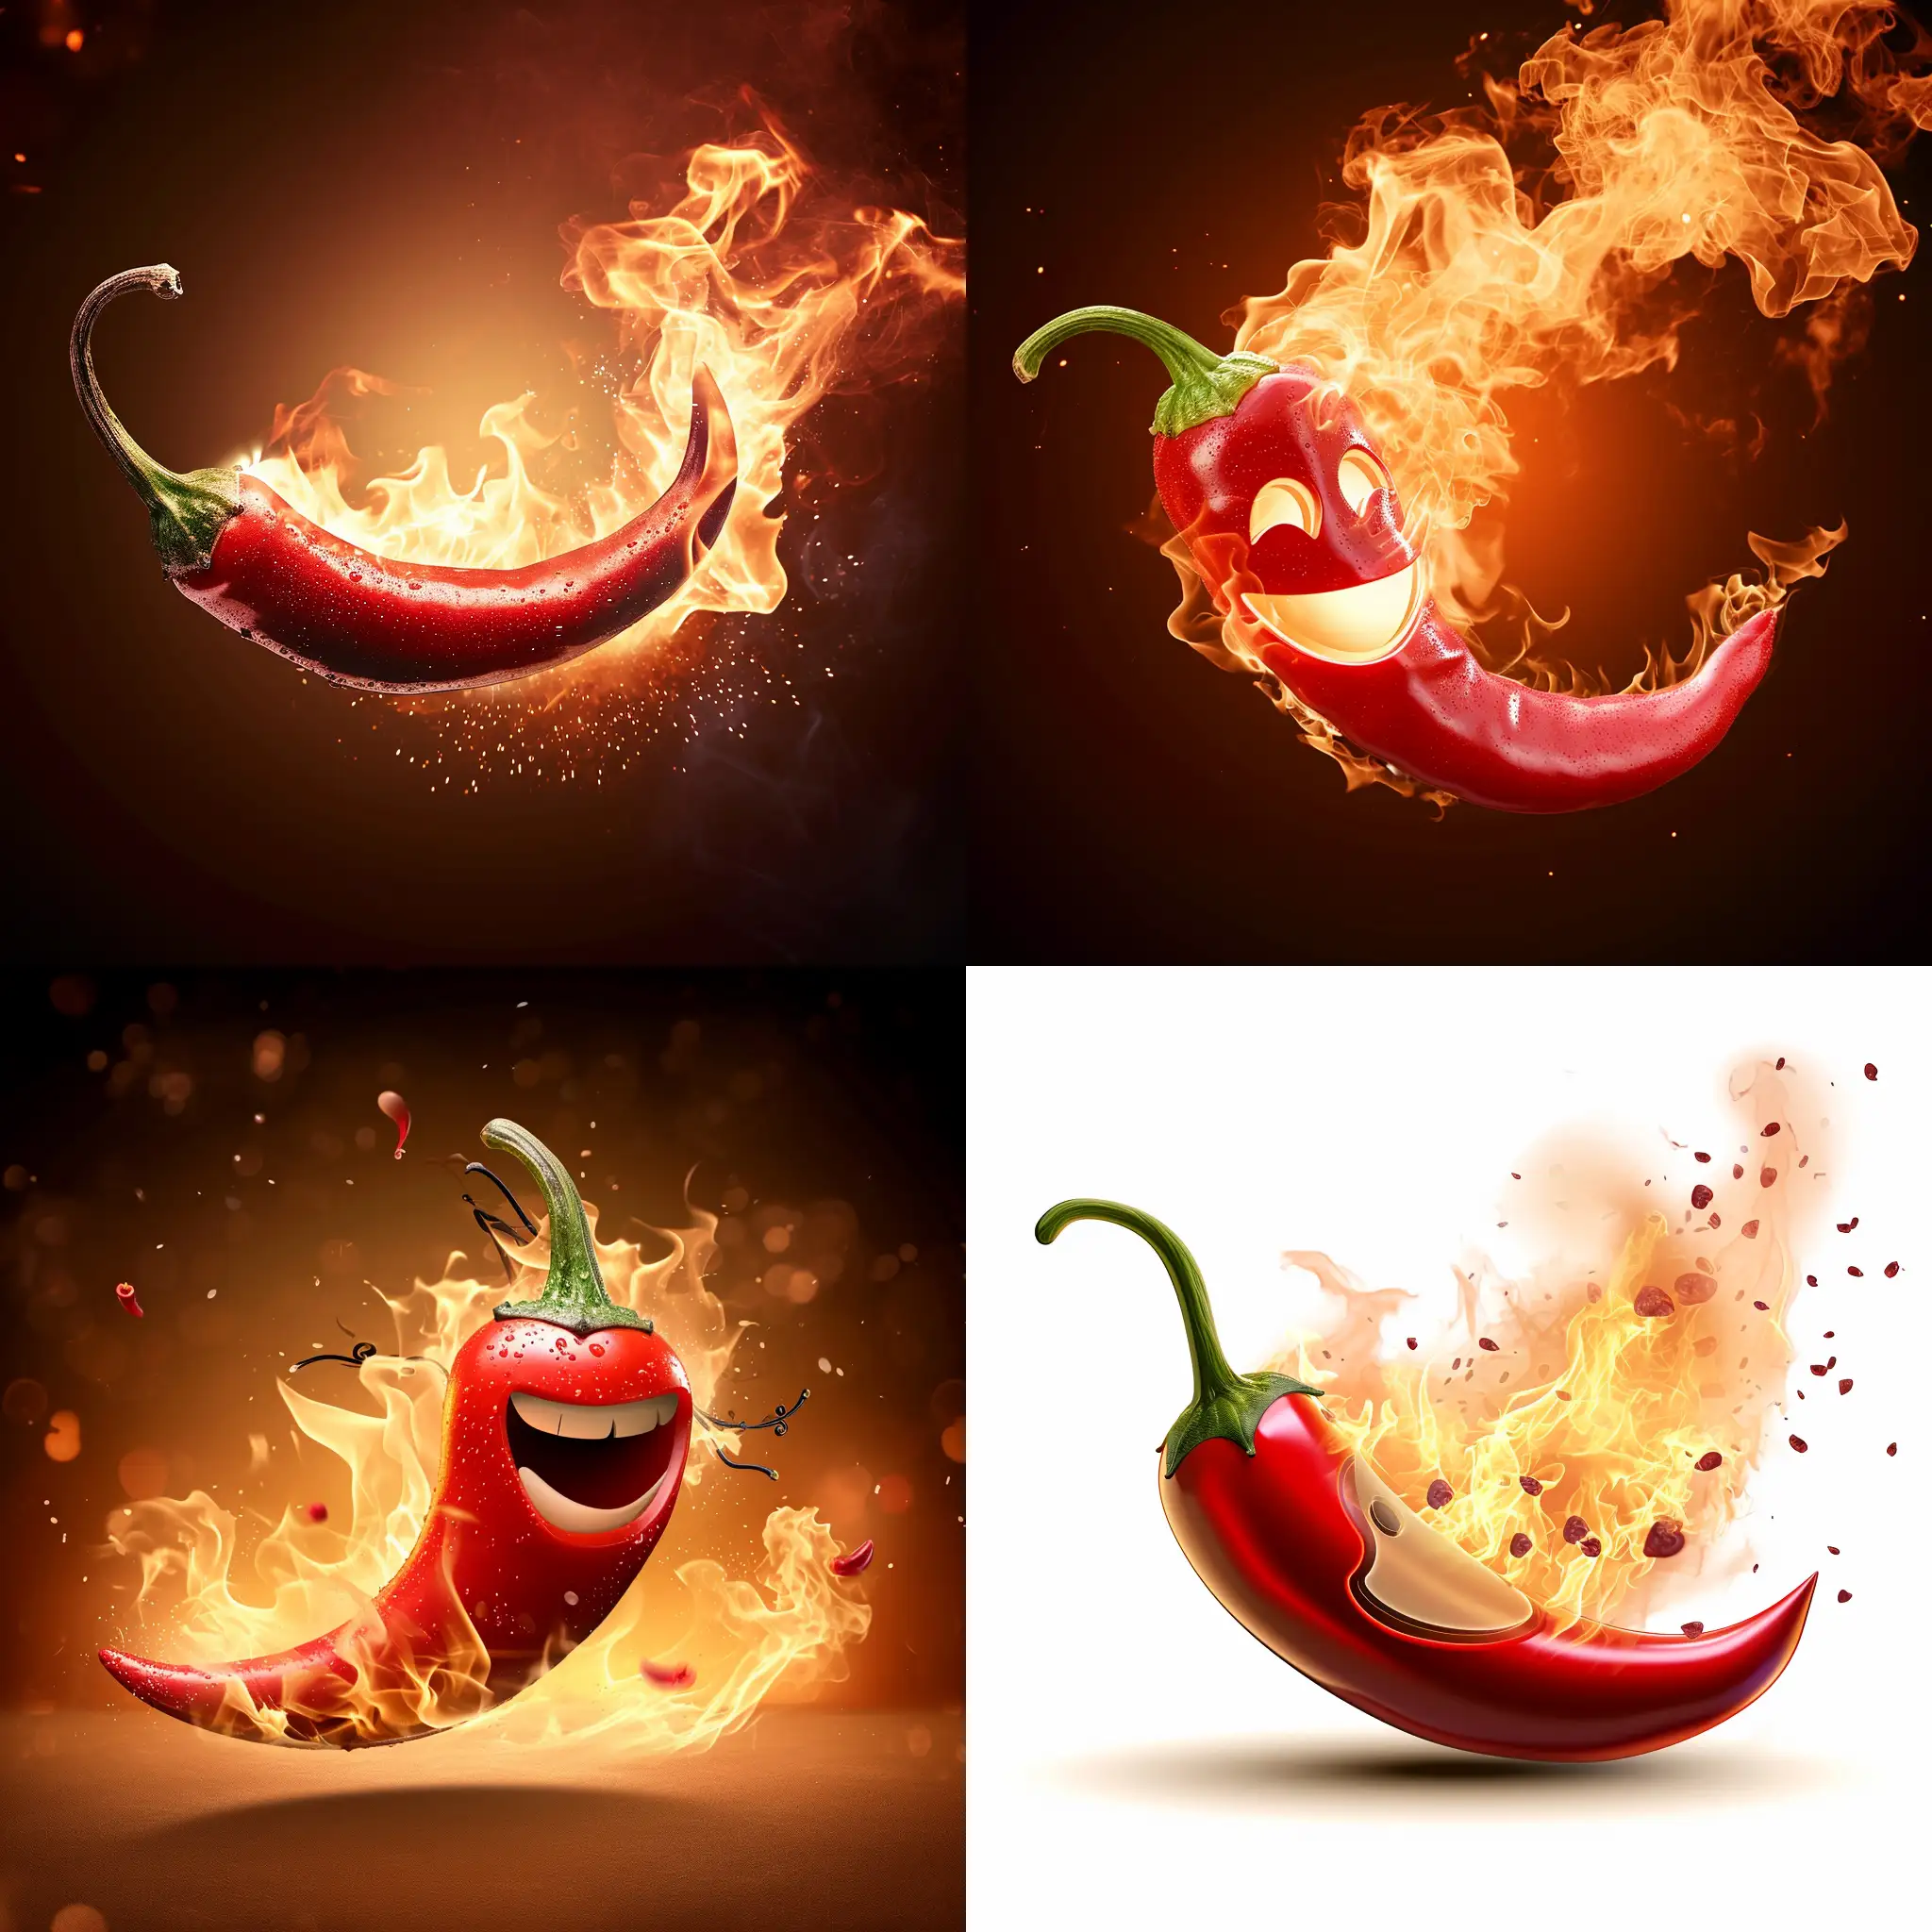 chili pepper emoji in fire